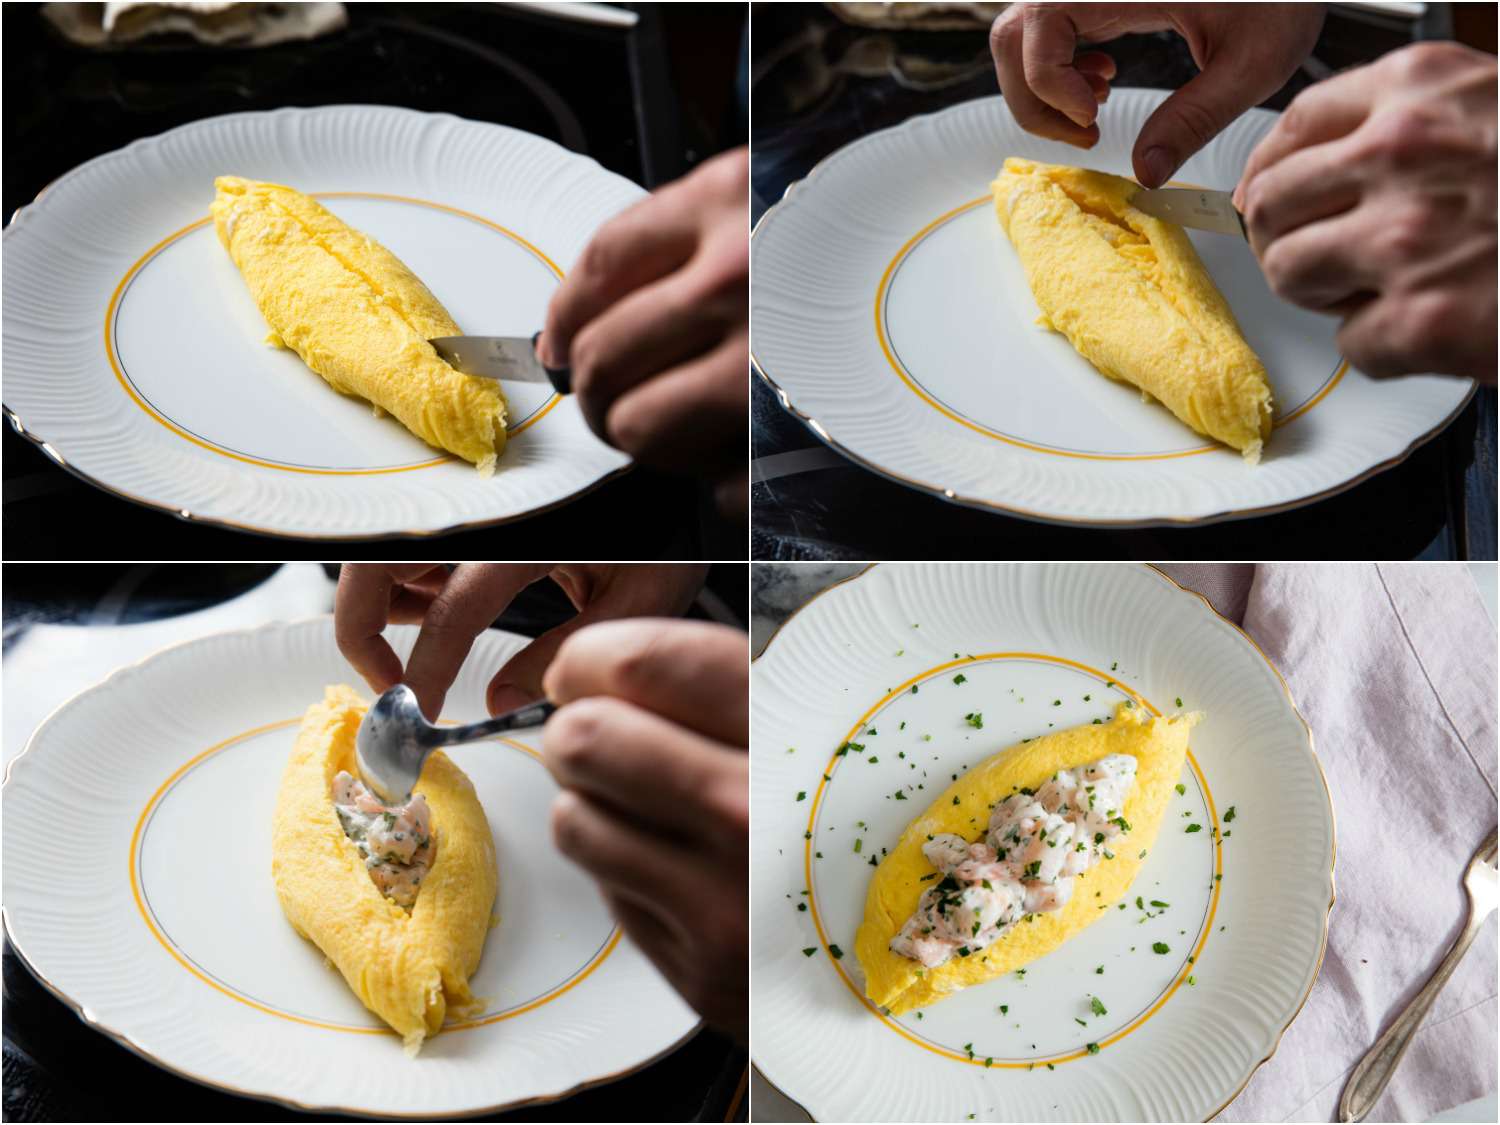 法式煎蛋卷的填充物照片拼贴:用刀切开煎蛋卷，拉大开口，舀入虾仁沙拉，最后用香草末装饰gydF4y2Ba